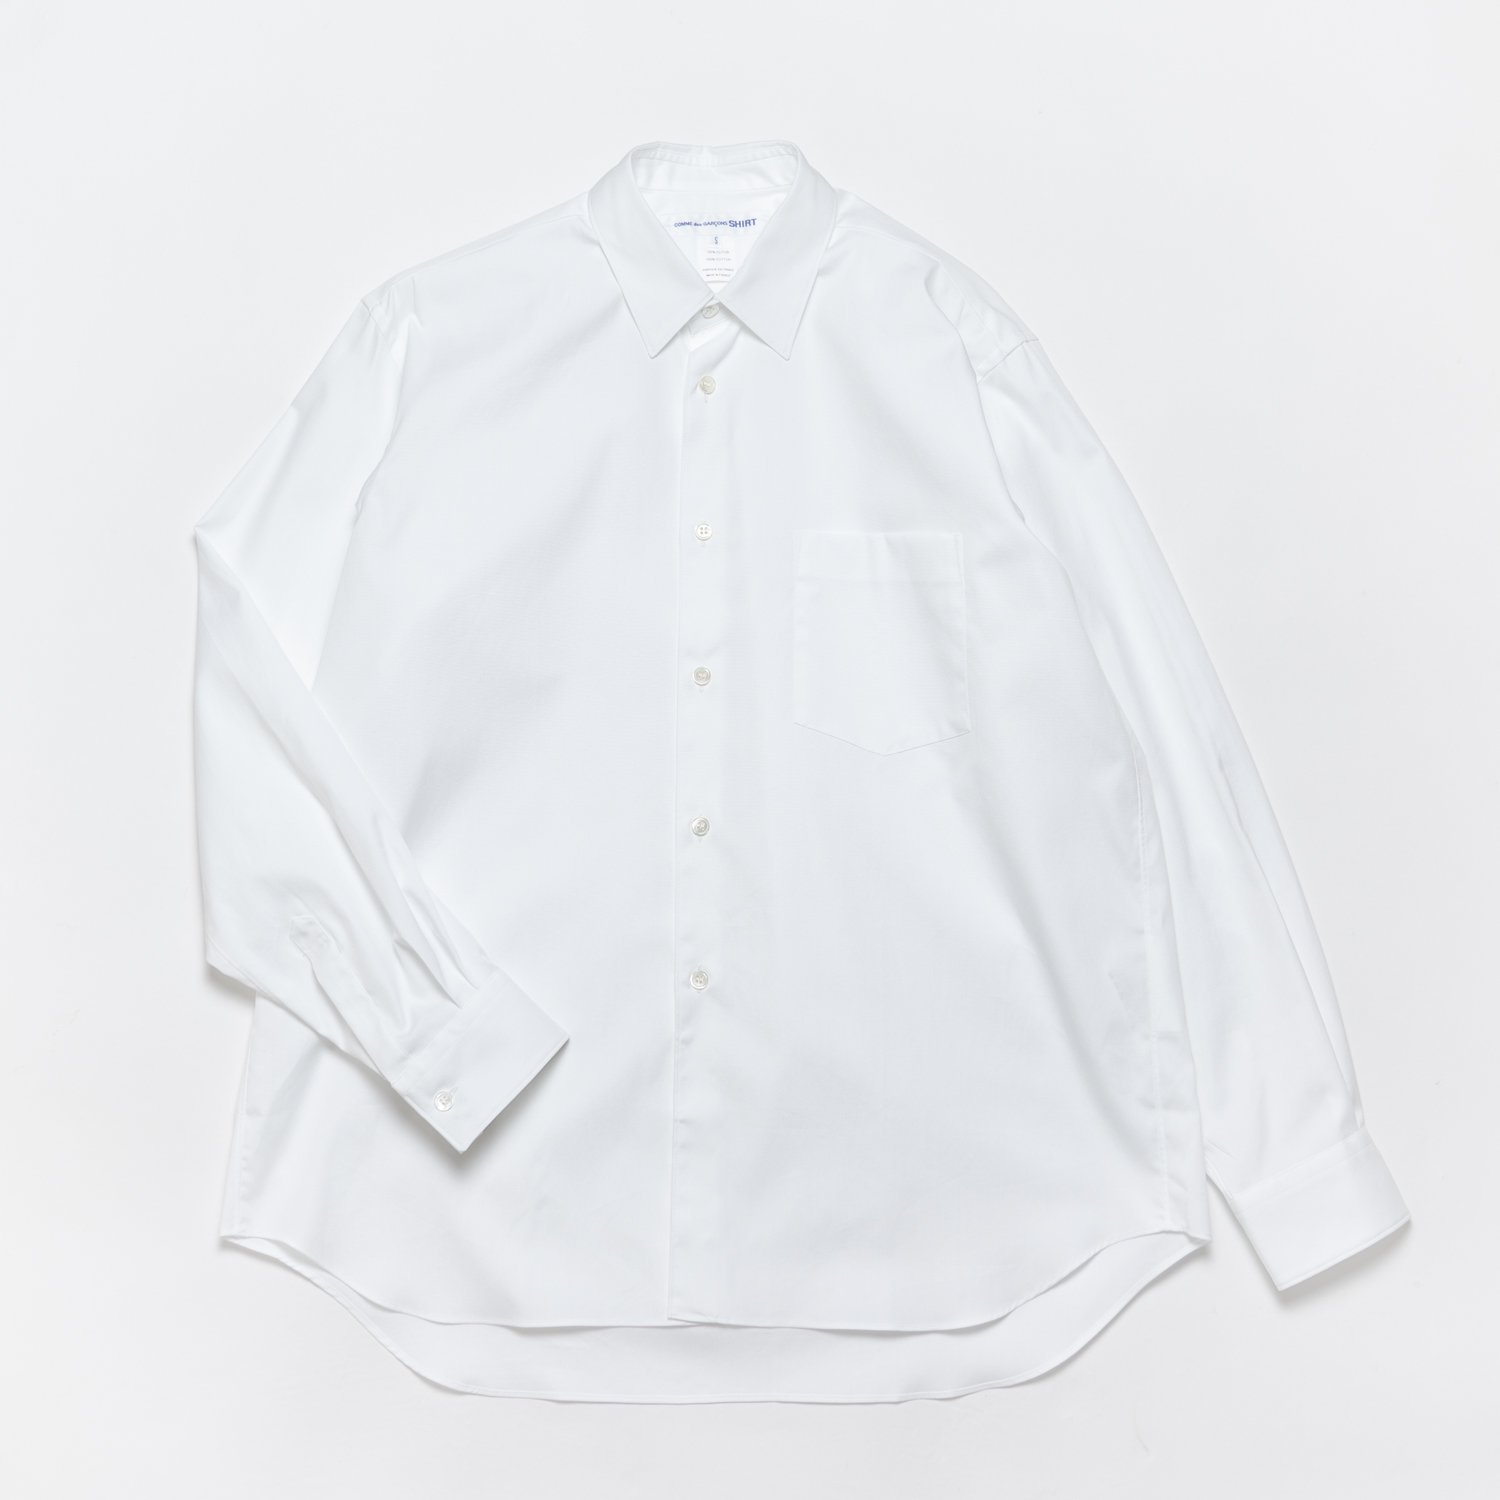 身幅65cmコムデギャルソンシャツ フォーエバー ワイドクラシック  ホワイト XL